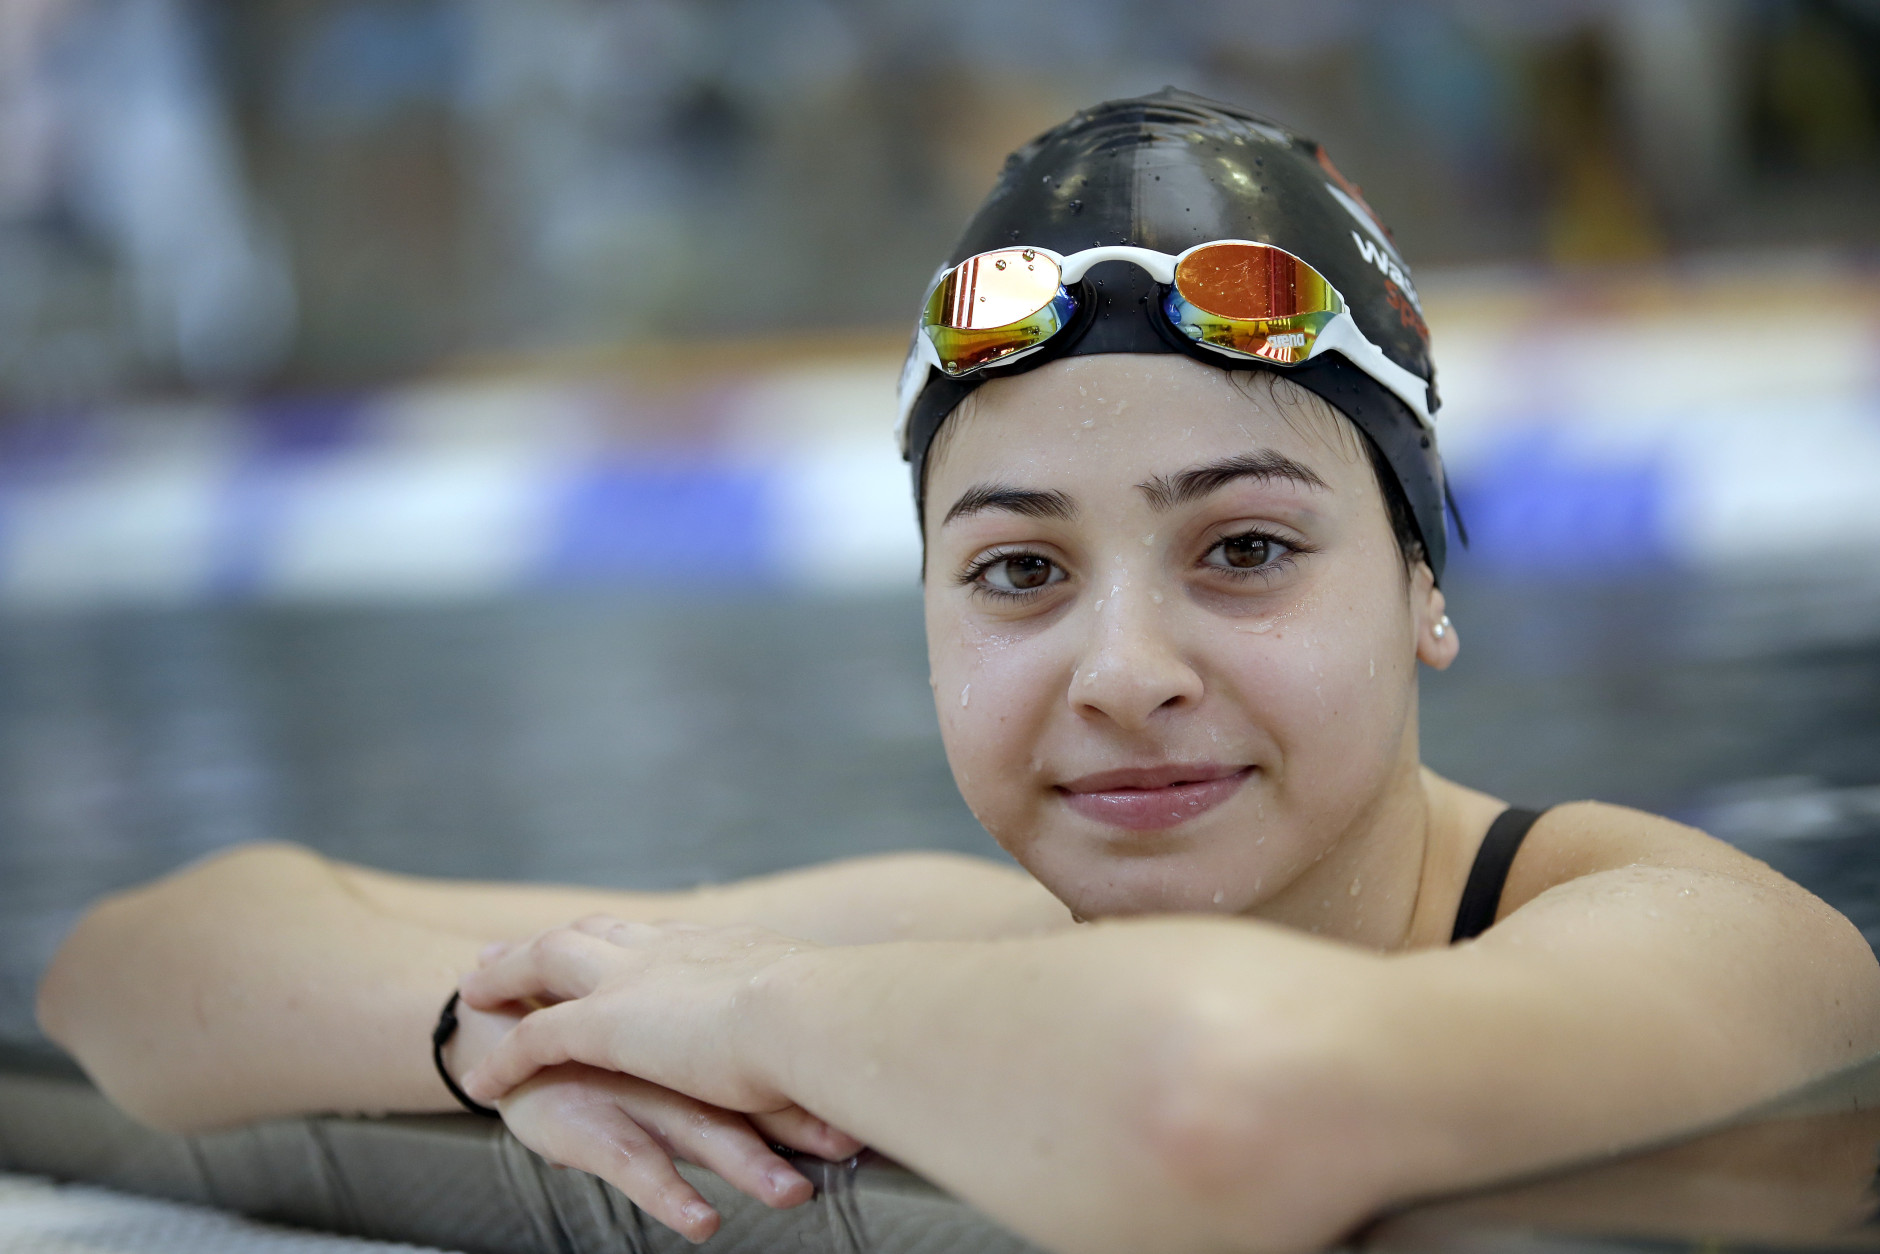 VĐV bơi lội gốc Syria Yusra Mardini, 18 tuổi,tranh tài ở nội dung 100m bơi bướm và 100m bơi tự do. Ảnh: AP